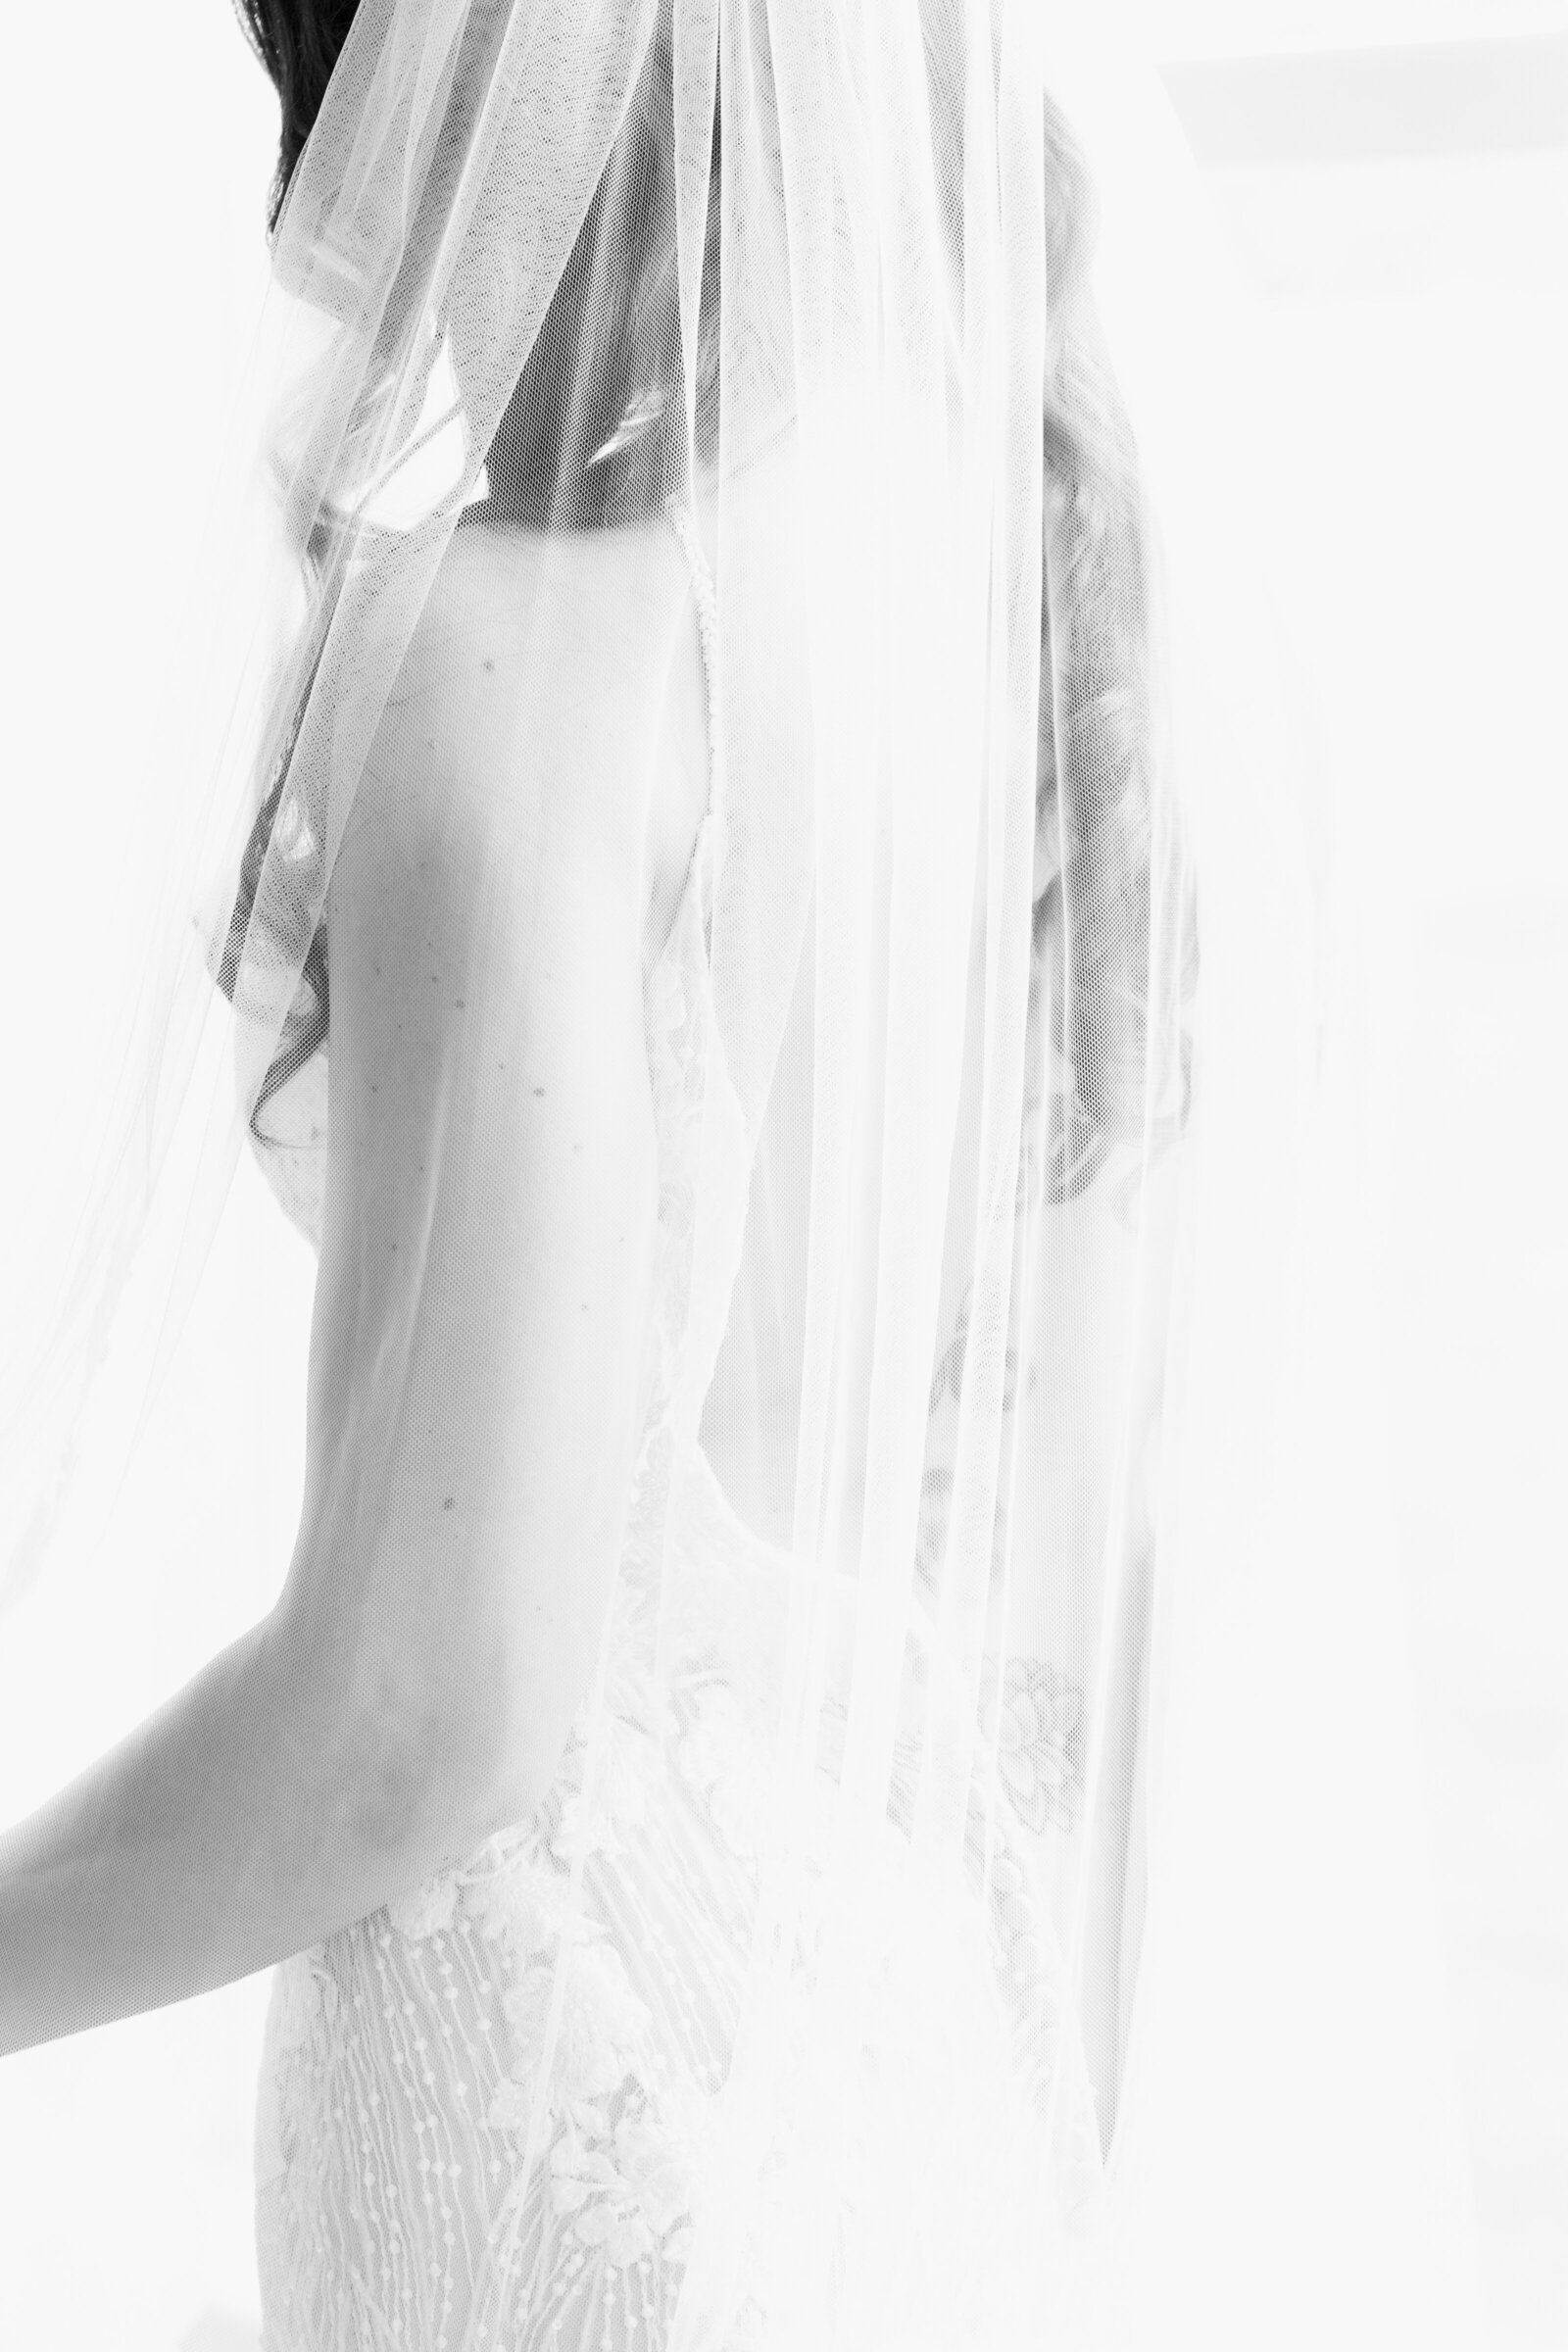 veil with boudoir